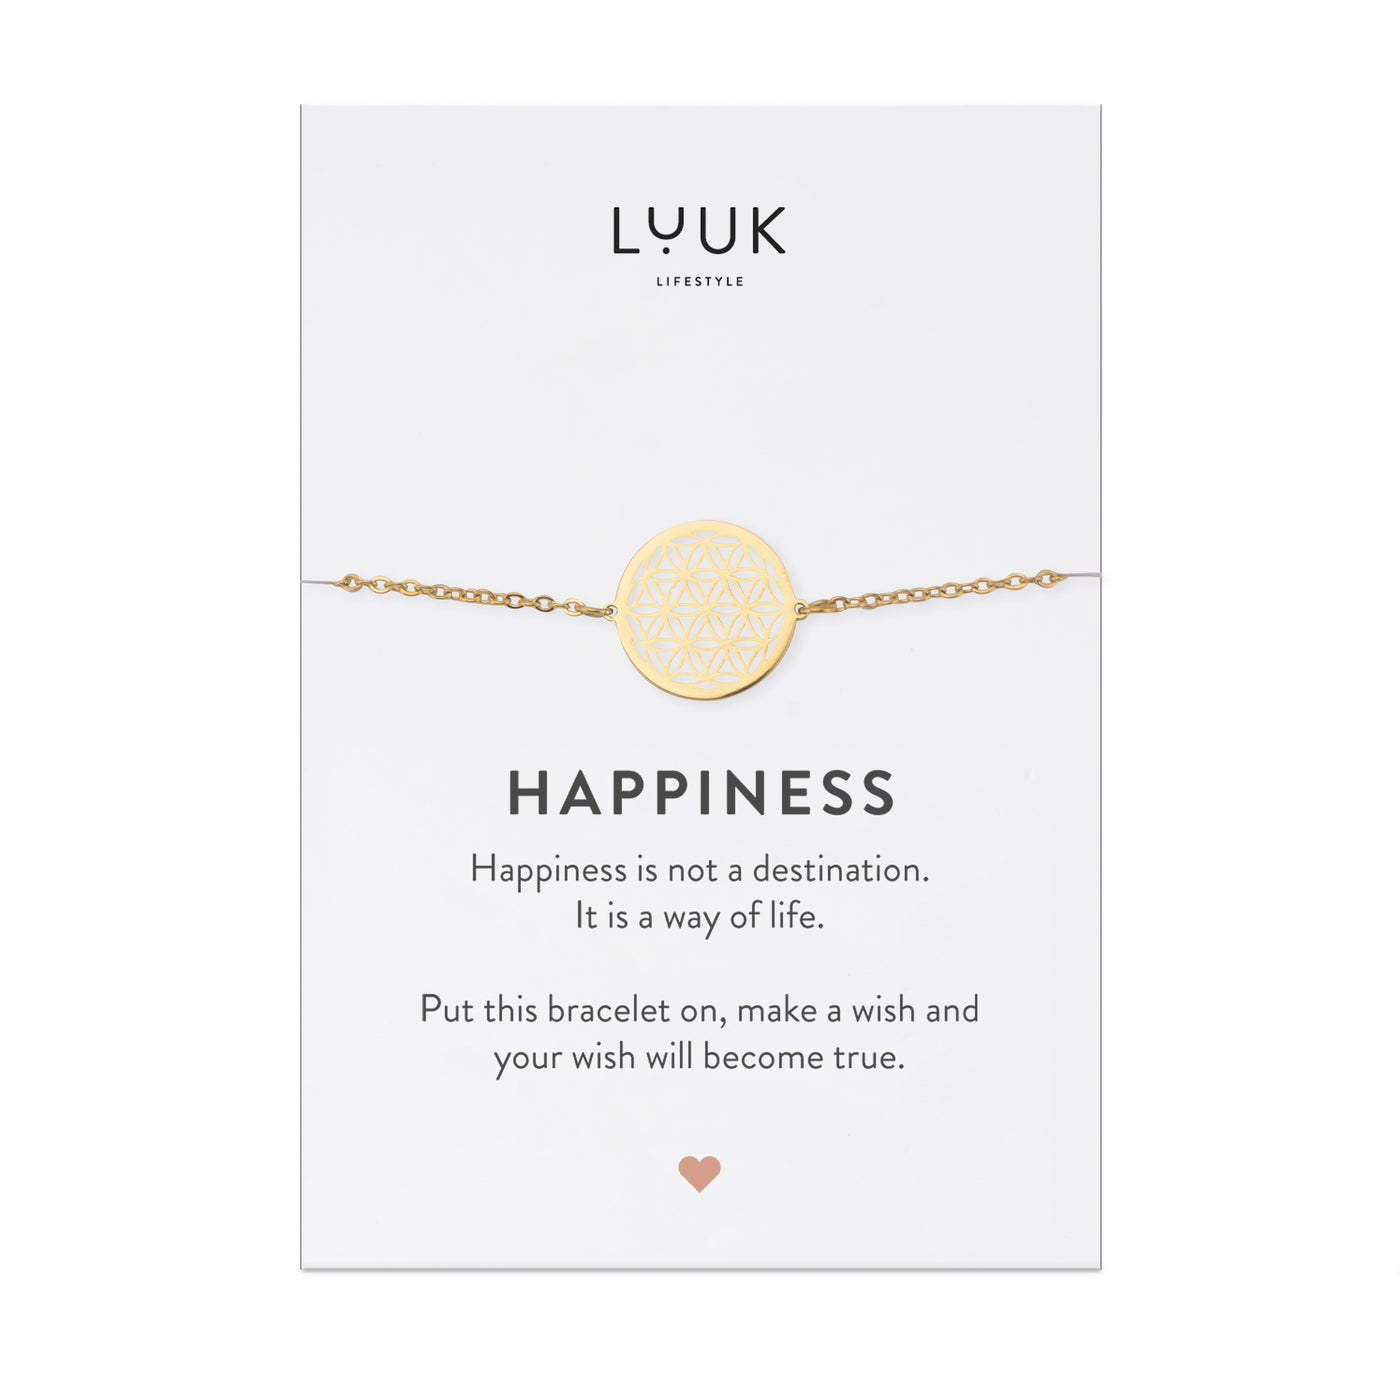 Halskette mit Mandala Anhänger in Gold auf Happiness Spruchkarte von der Brand Luuk Lifestyle